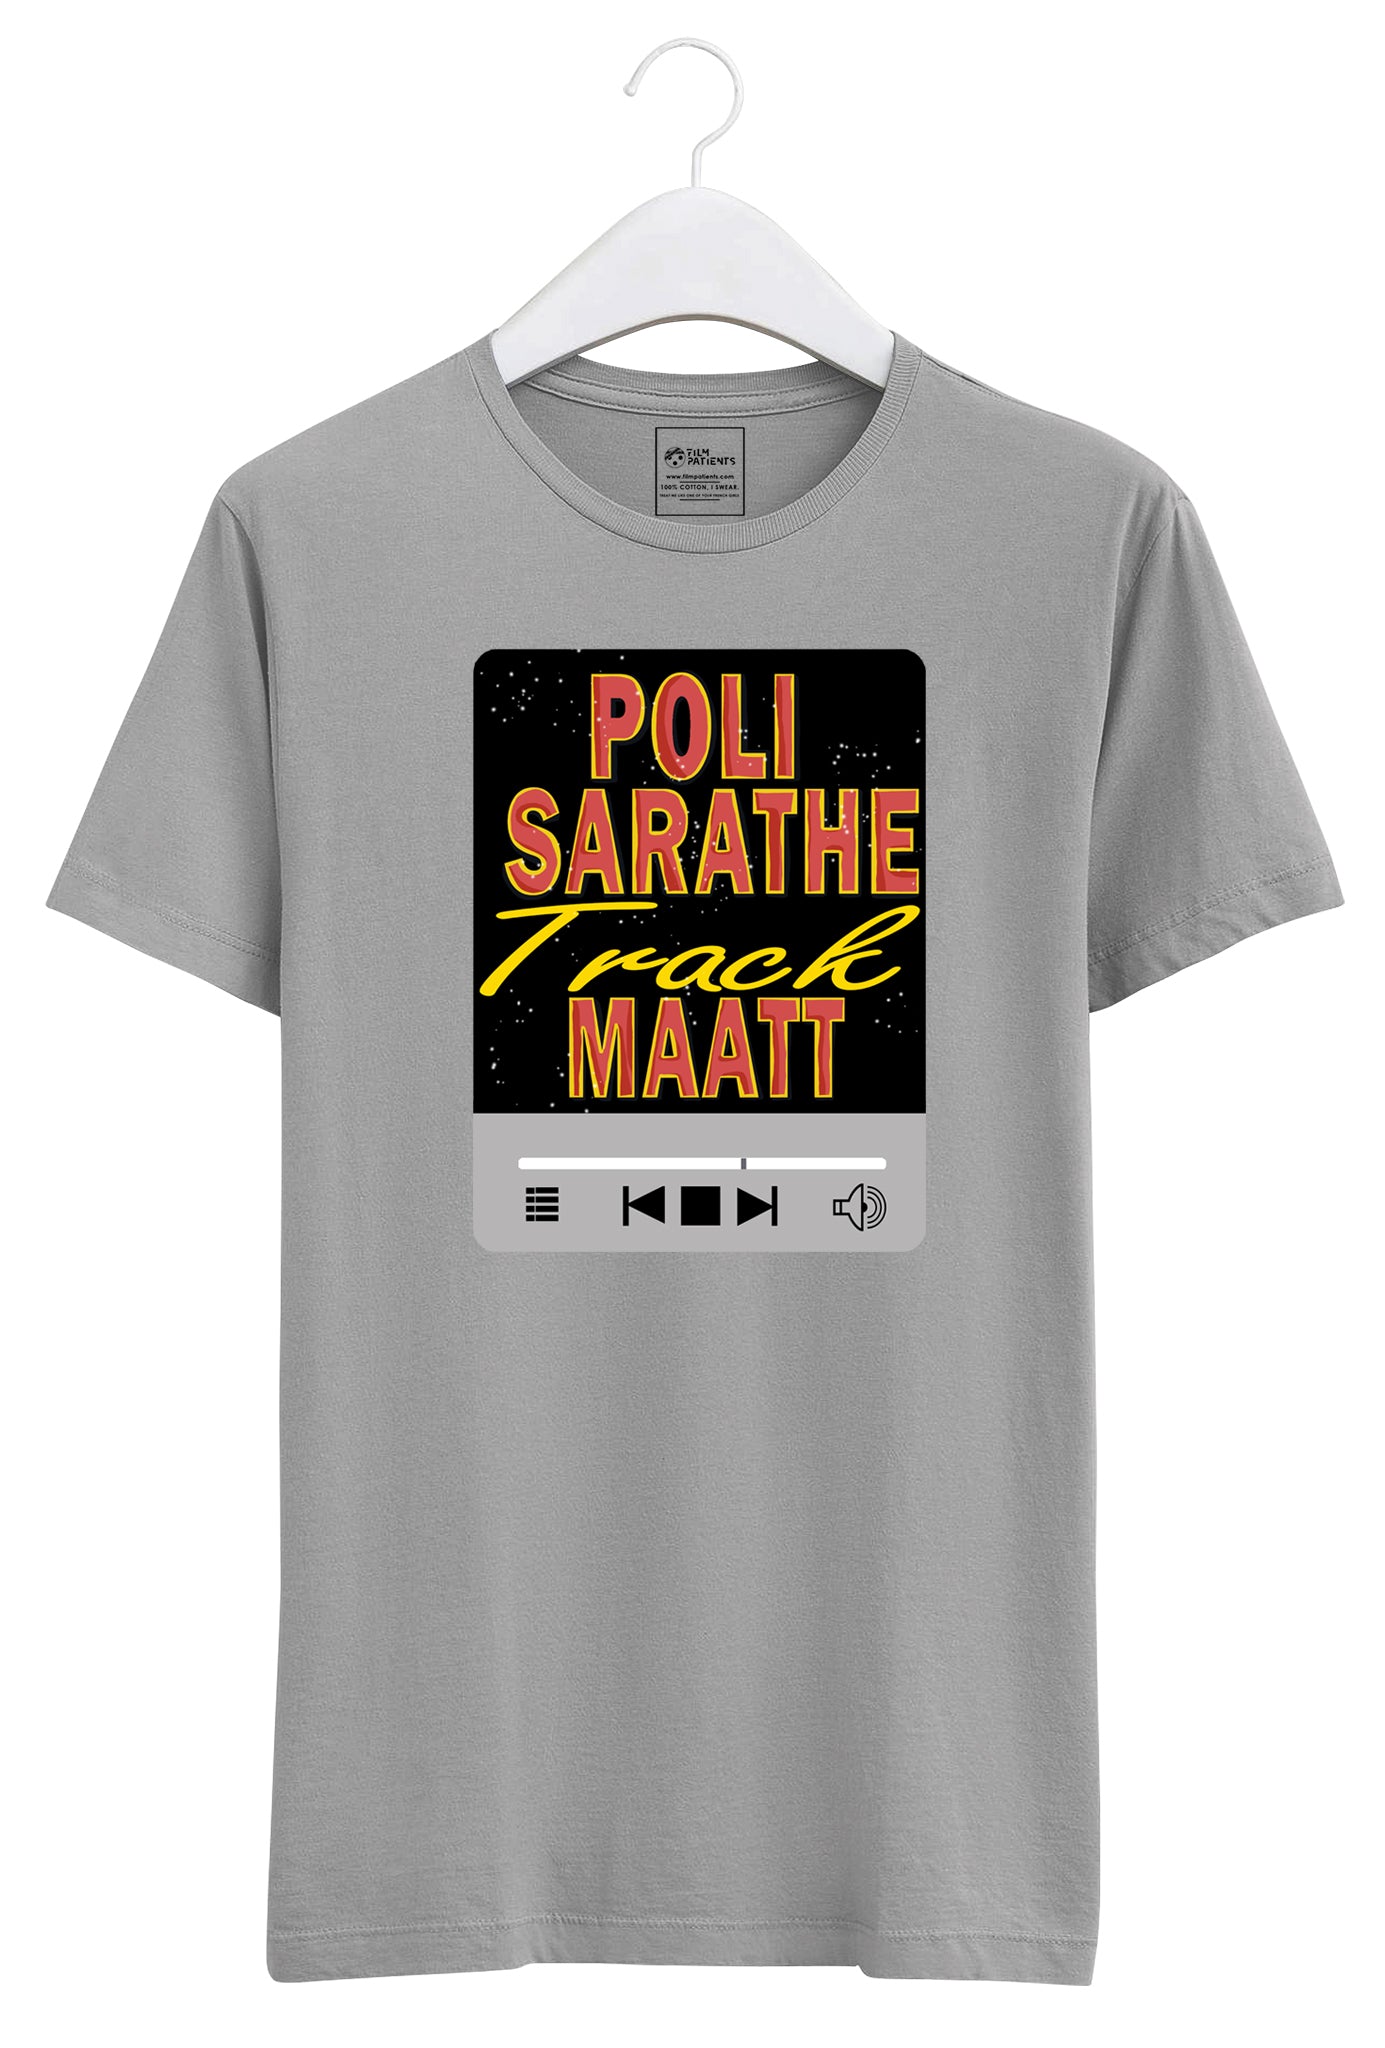 Buy Poli Sarathe Track Matt Tshirt Online